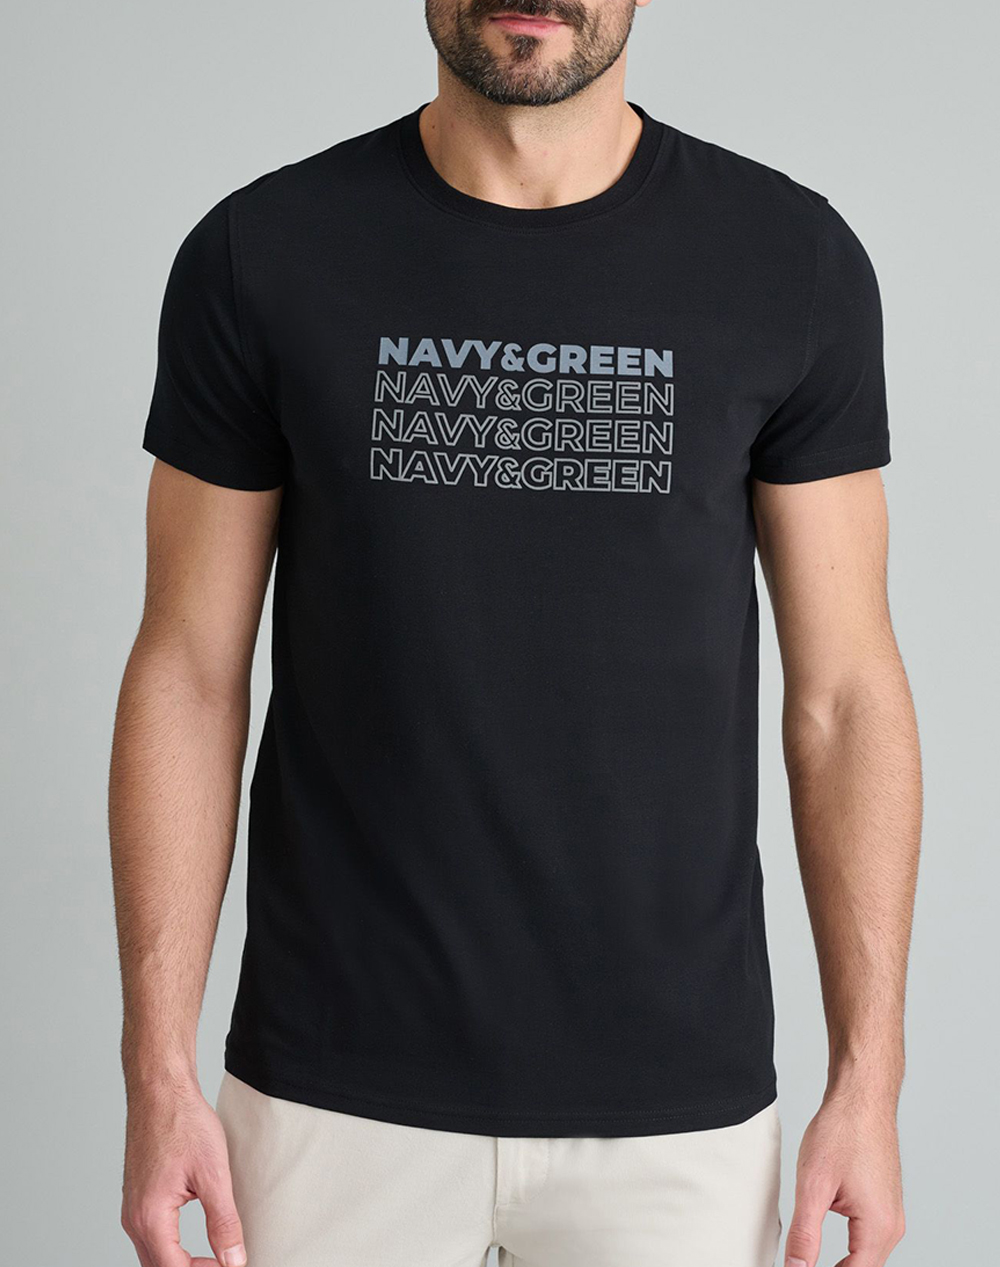 NAVY&GREEN T-SHIRTS-Τ-SHIRTS 24TU.322/10P-BLACK Black 3820PNAVY3400165_2813